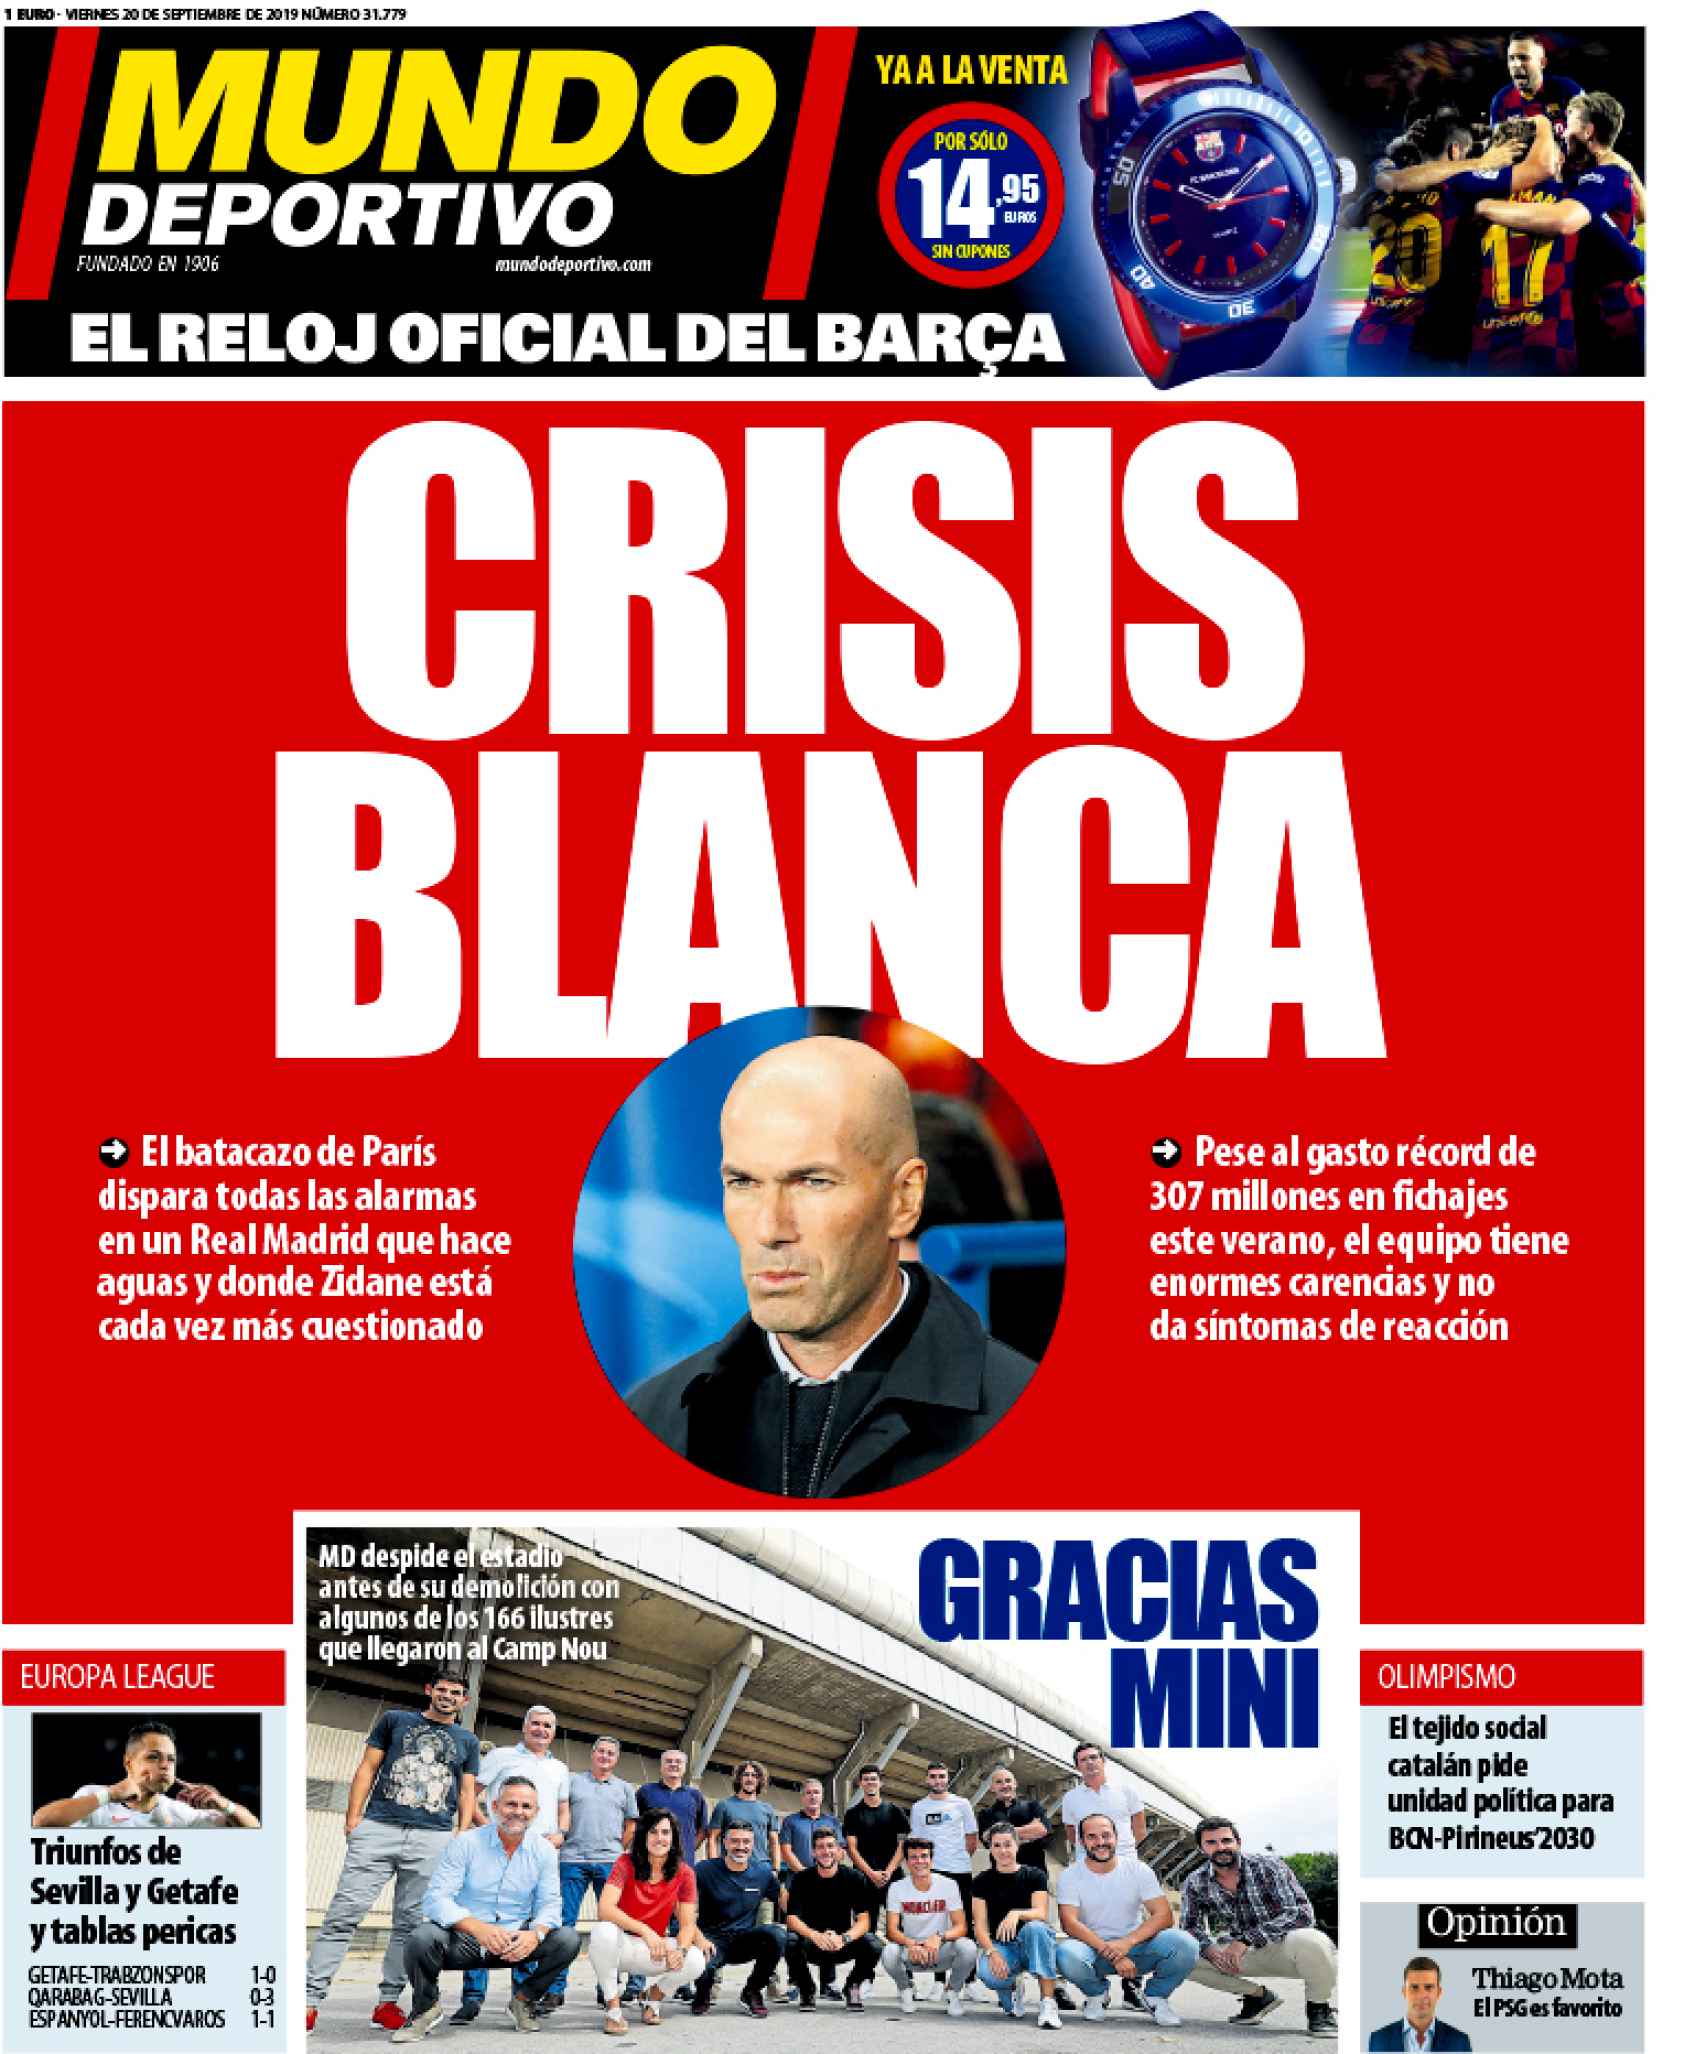 La portada del diario Mundo Deportivo (20/09/2019)